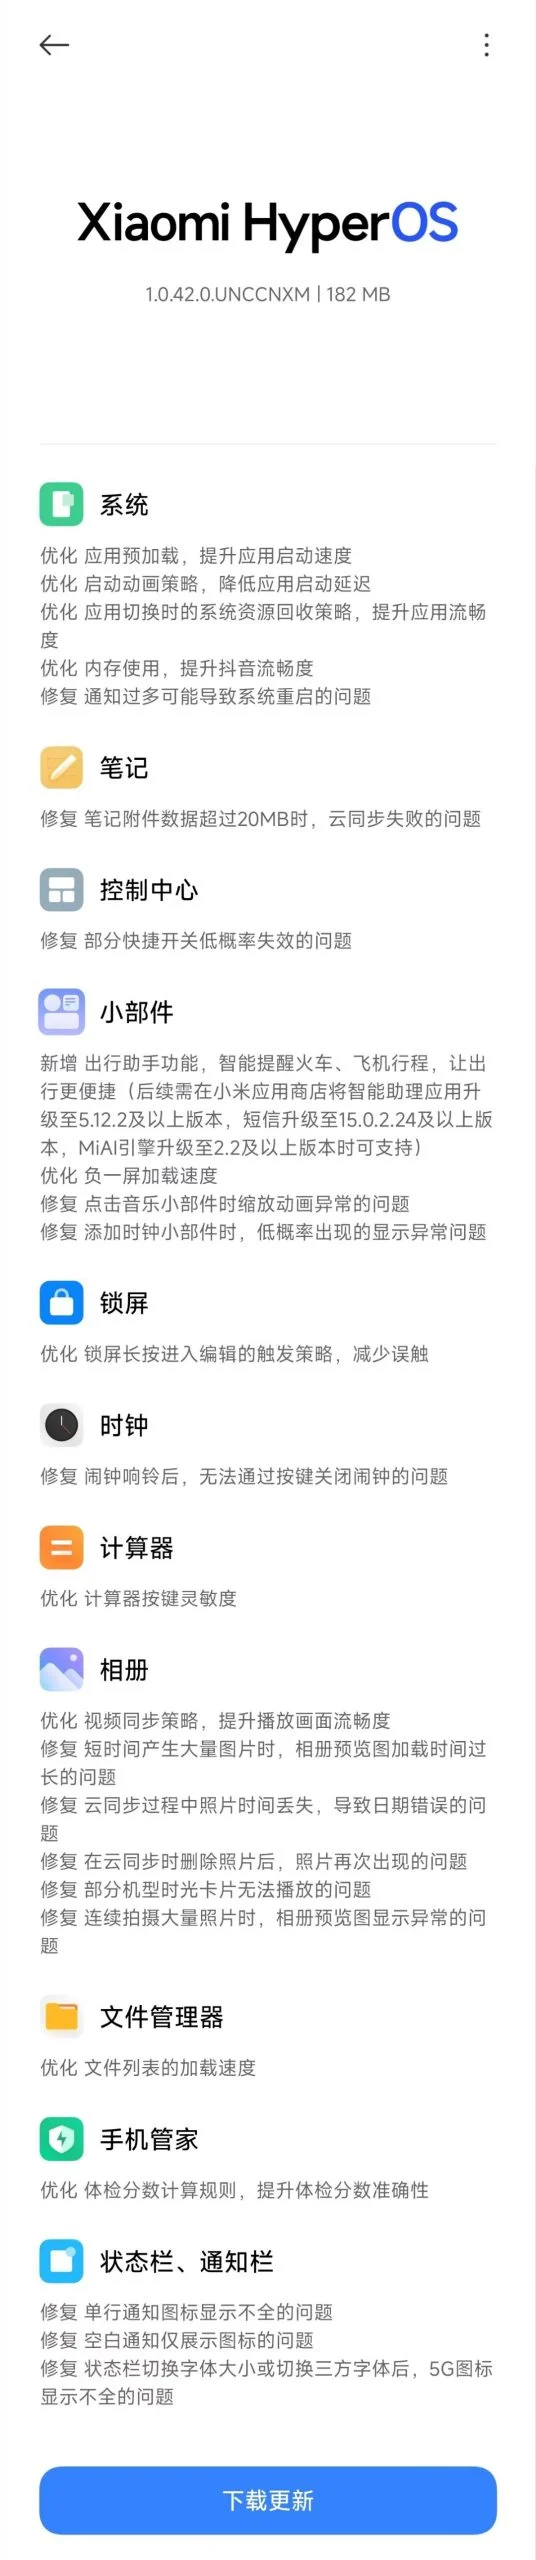 Xiaomi випустила нове оновлення під умовною назвою HyperOS 1.5